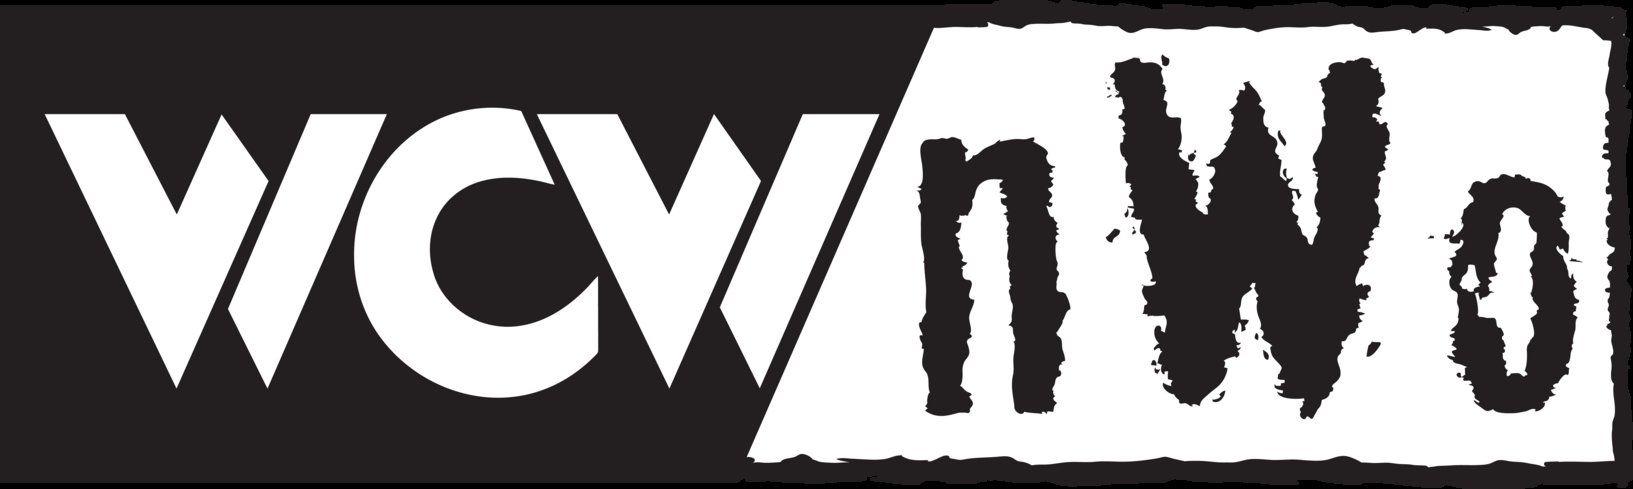 NWO Logo - WCW / nWo Logo by B1ueChr1s on DeviantArt